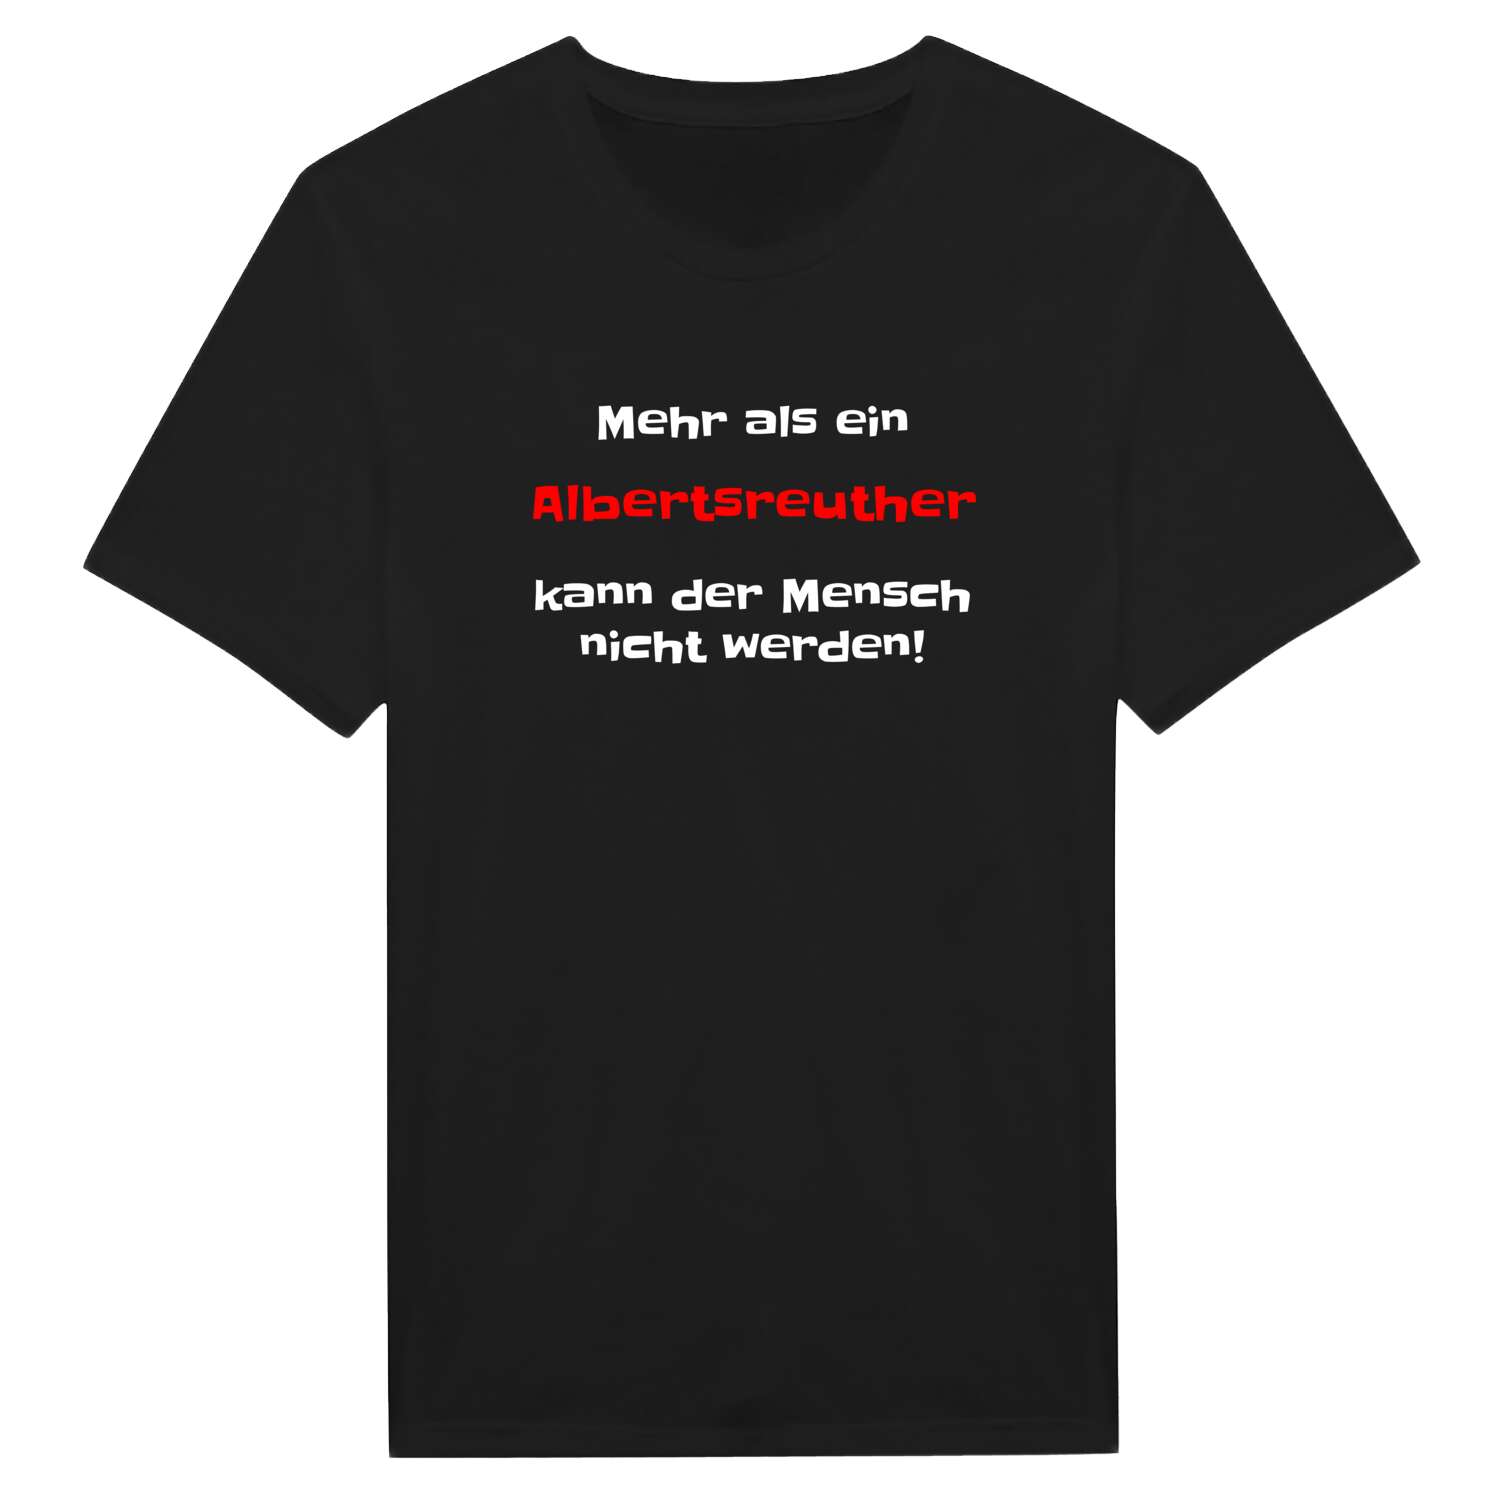 Albertsreuth T-Shirt »Mehr als ein«